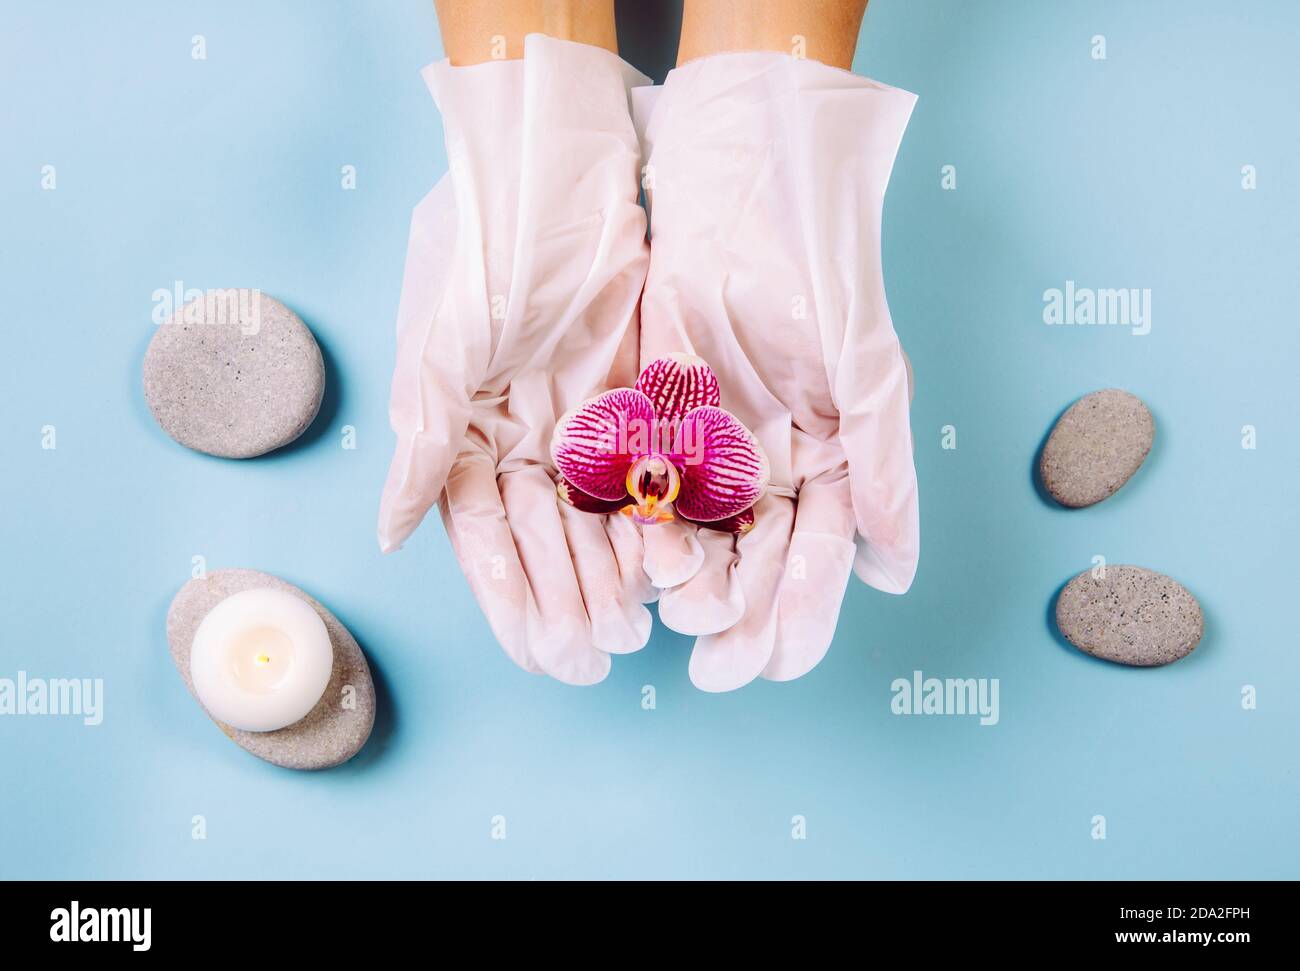 Nahaufnahme der Frau tragen zu Hause verwenden feuchtigkeitsspendende Handschuhe Maske Hexe können Ihre Hände weich und hydratisiert zu halten. Weiße Hände halten zarte Orchidee. Stockfoto